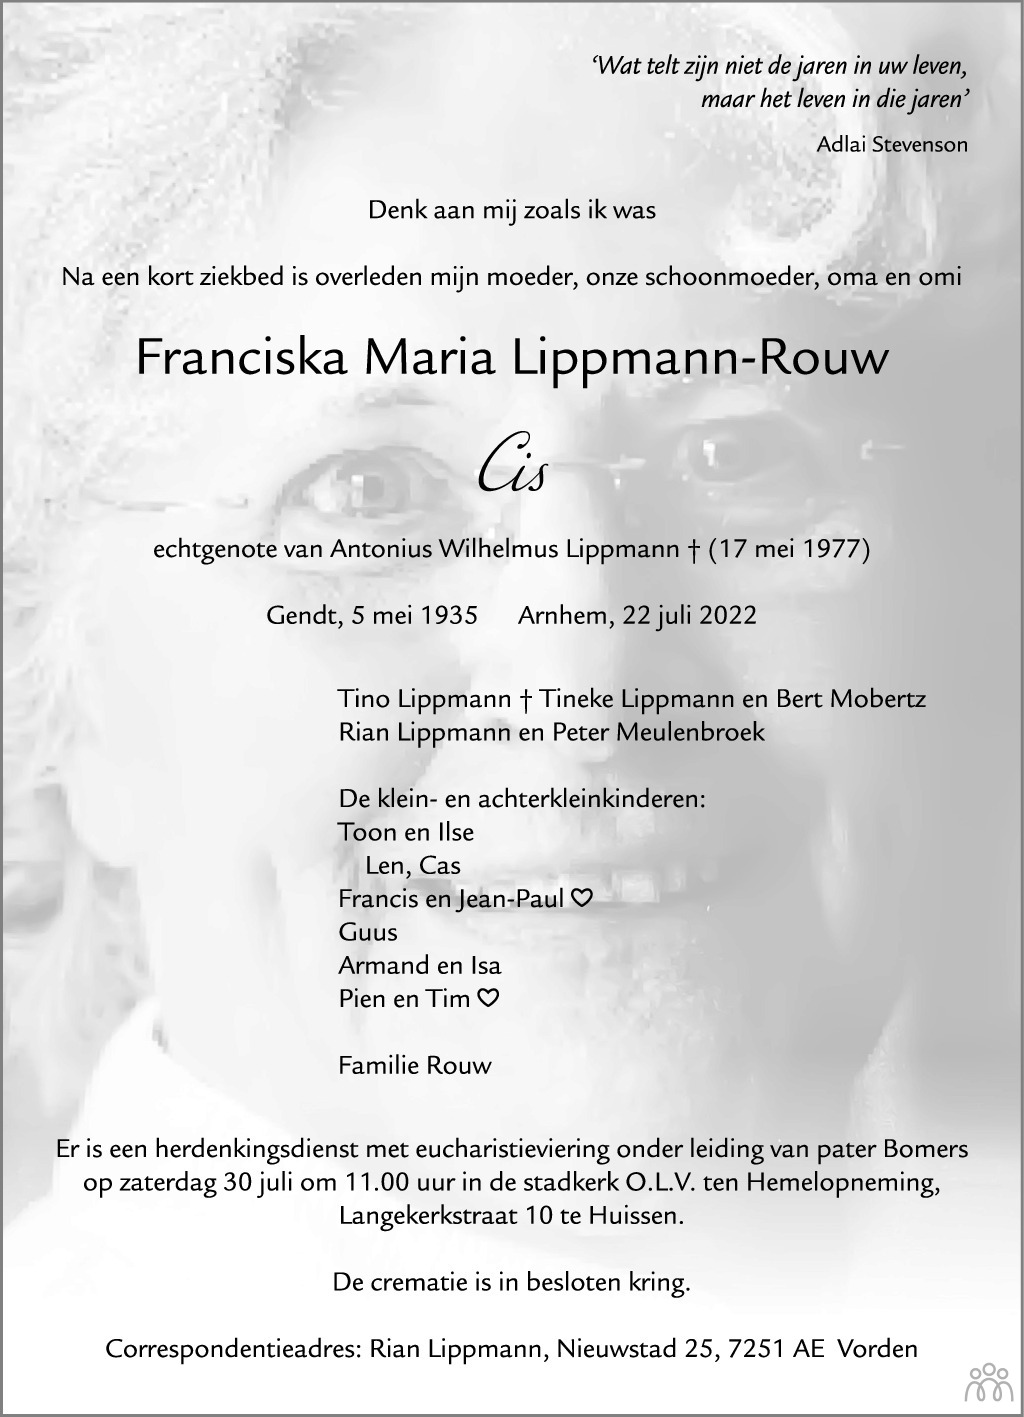 Overlijdensbericht van Franciska Maria (Cis) Lippmann-Rouw in de Gelderlander